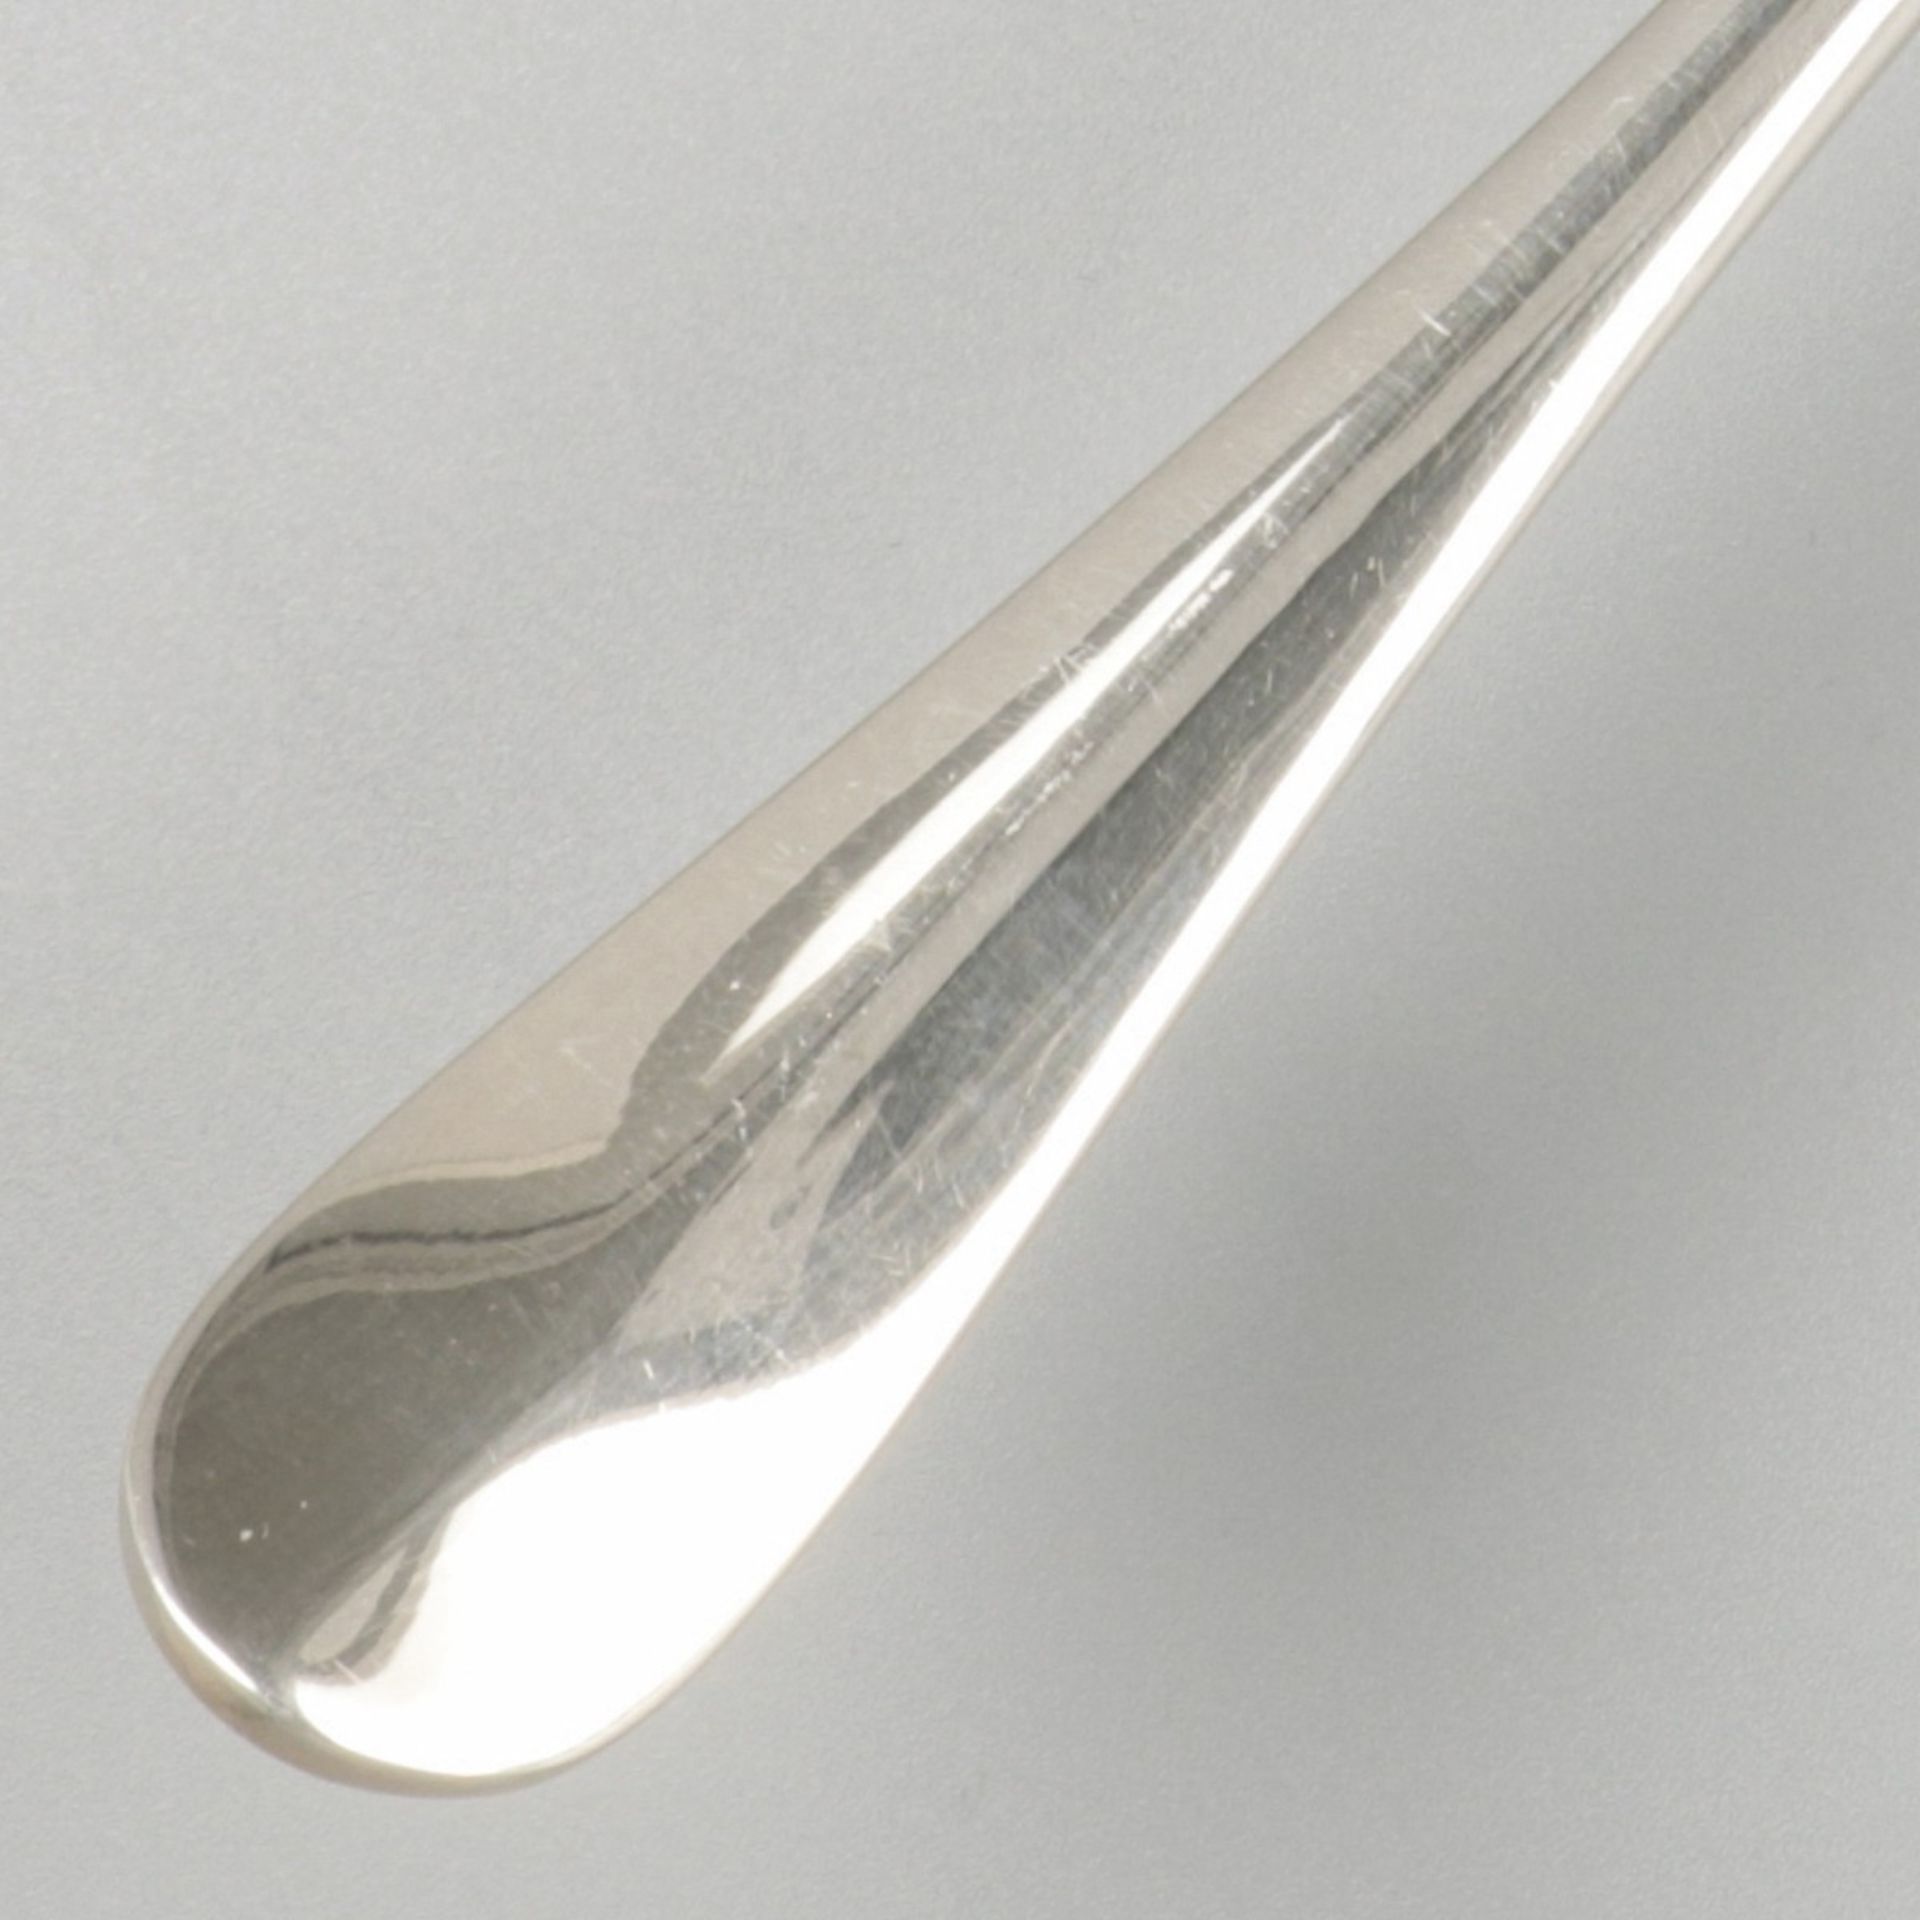 Fish shovel silver. - Image 4 of 5